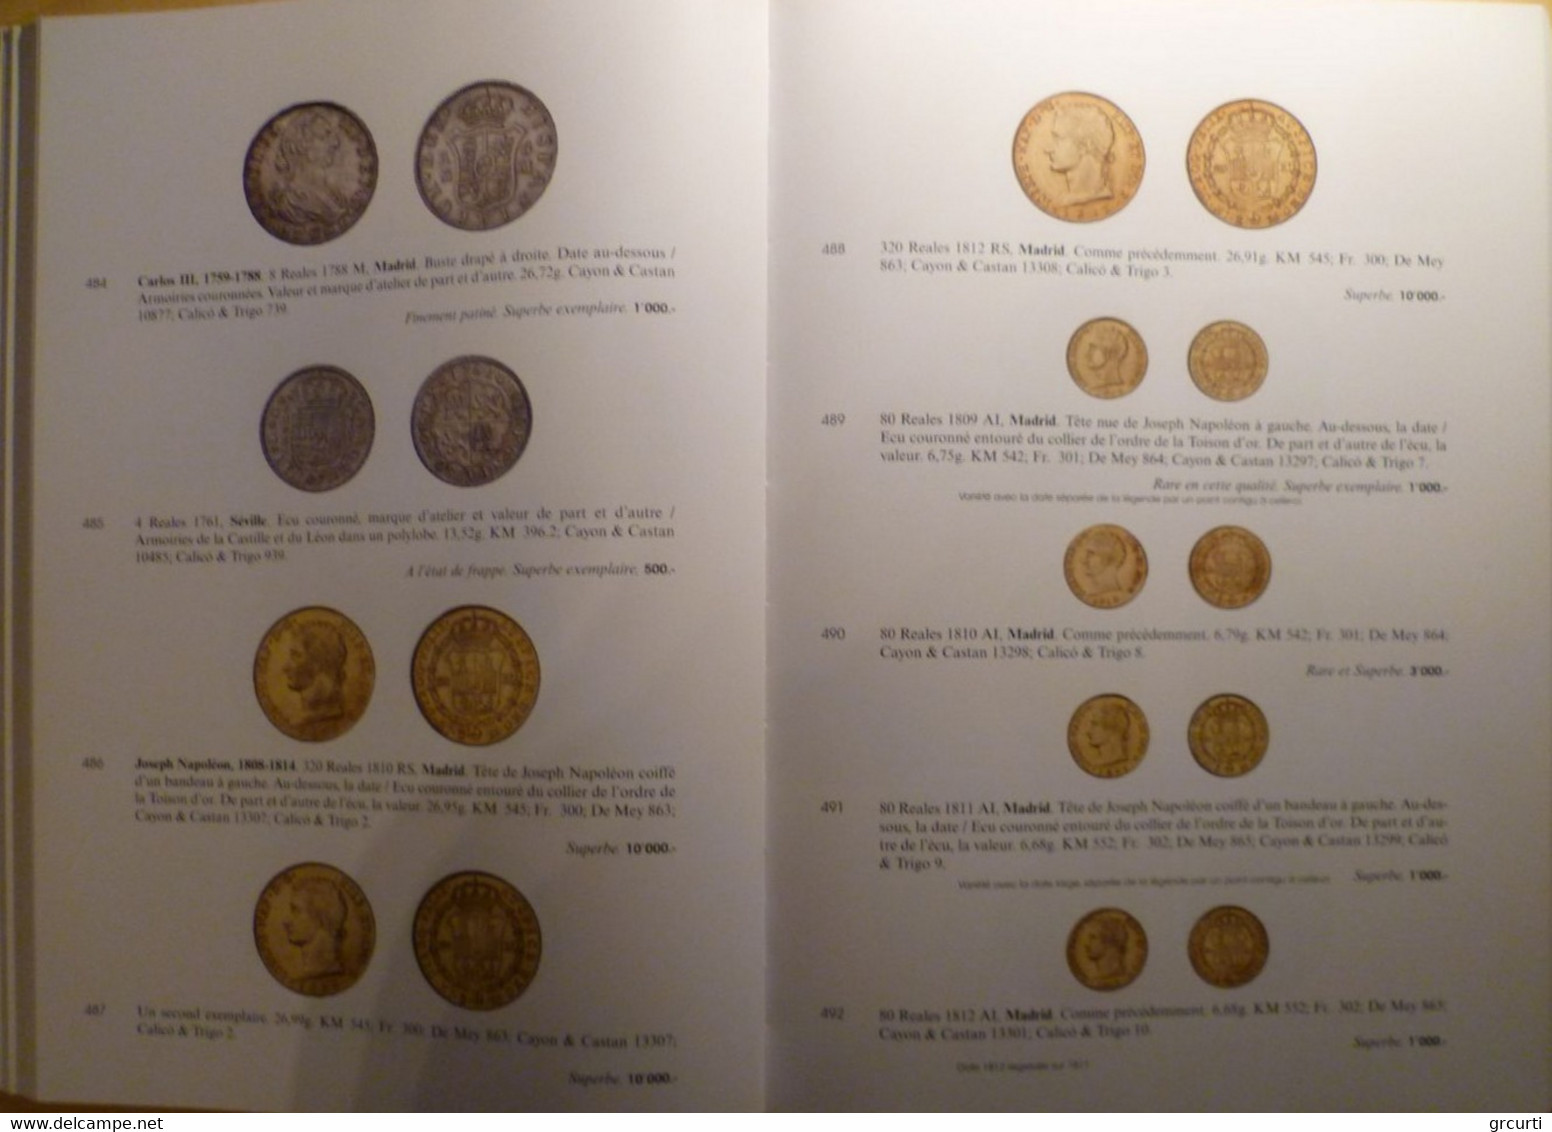 Catalogo D'asta Numismatica Genevensis - Asta N. 4 - 11-12/12/2006 - Livres & Logiciels